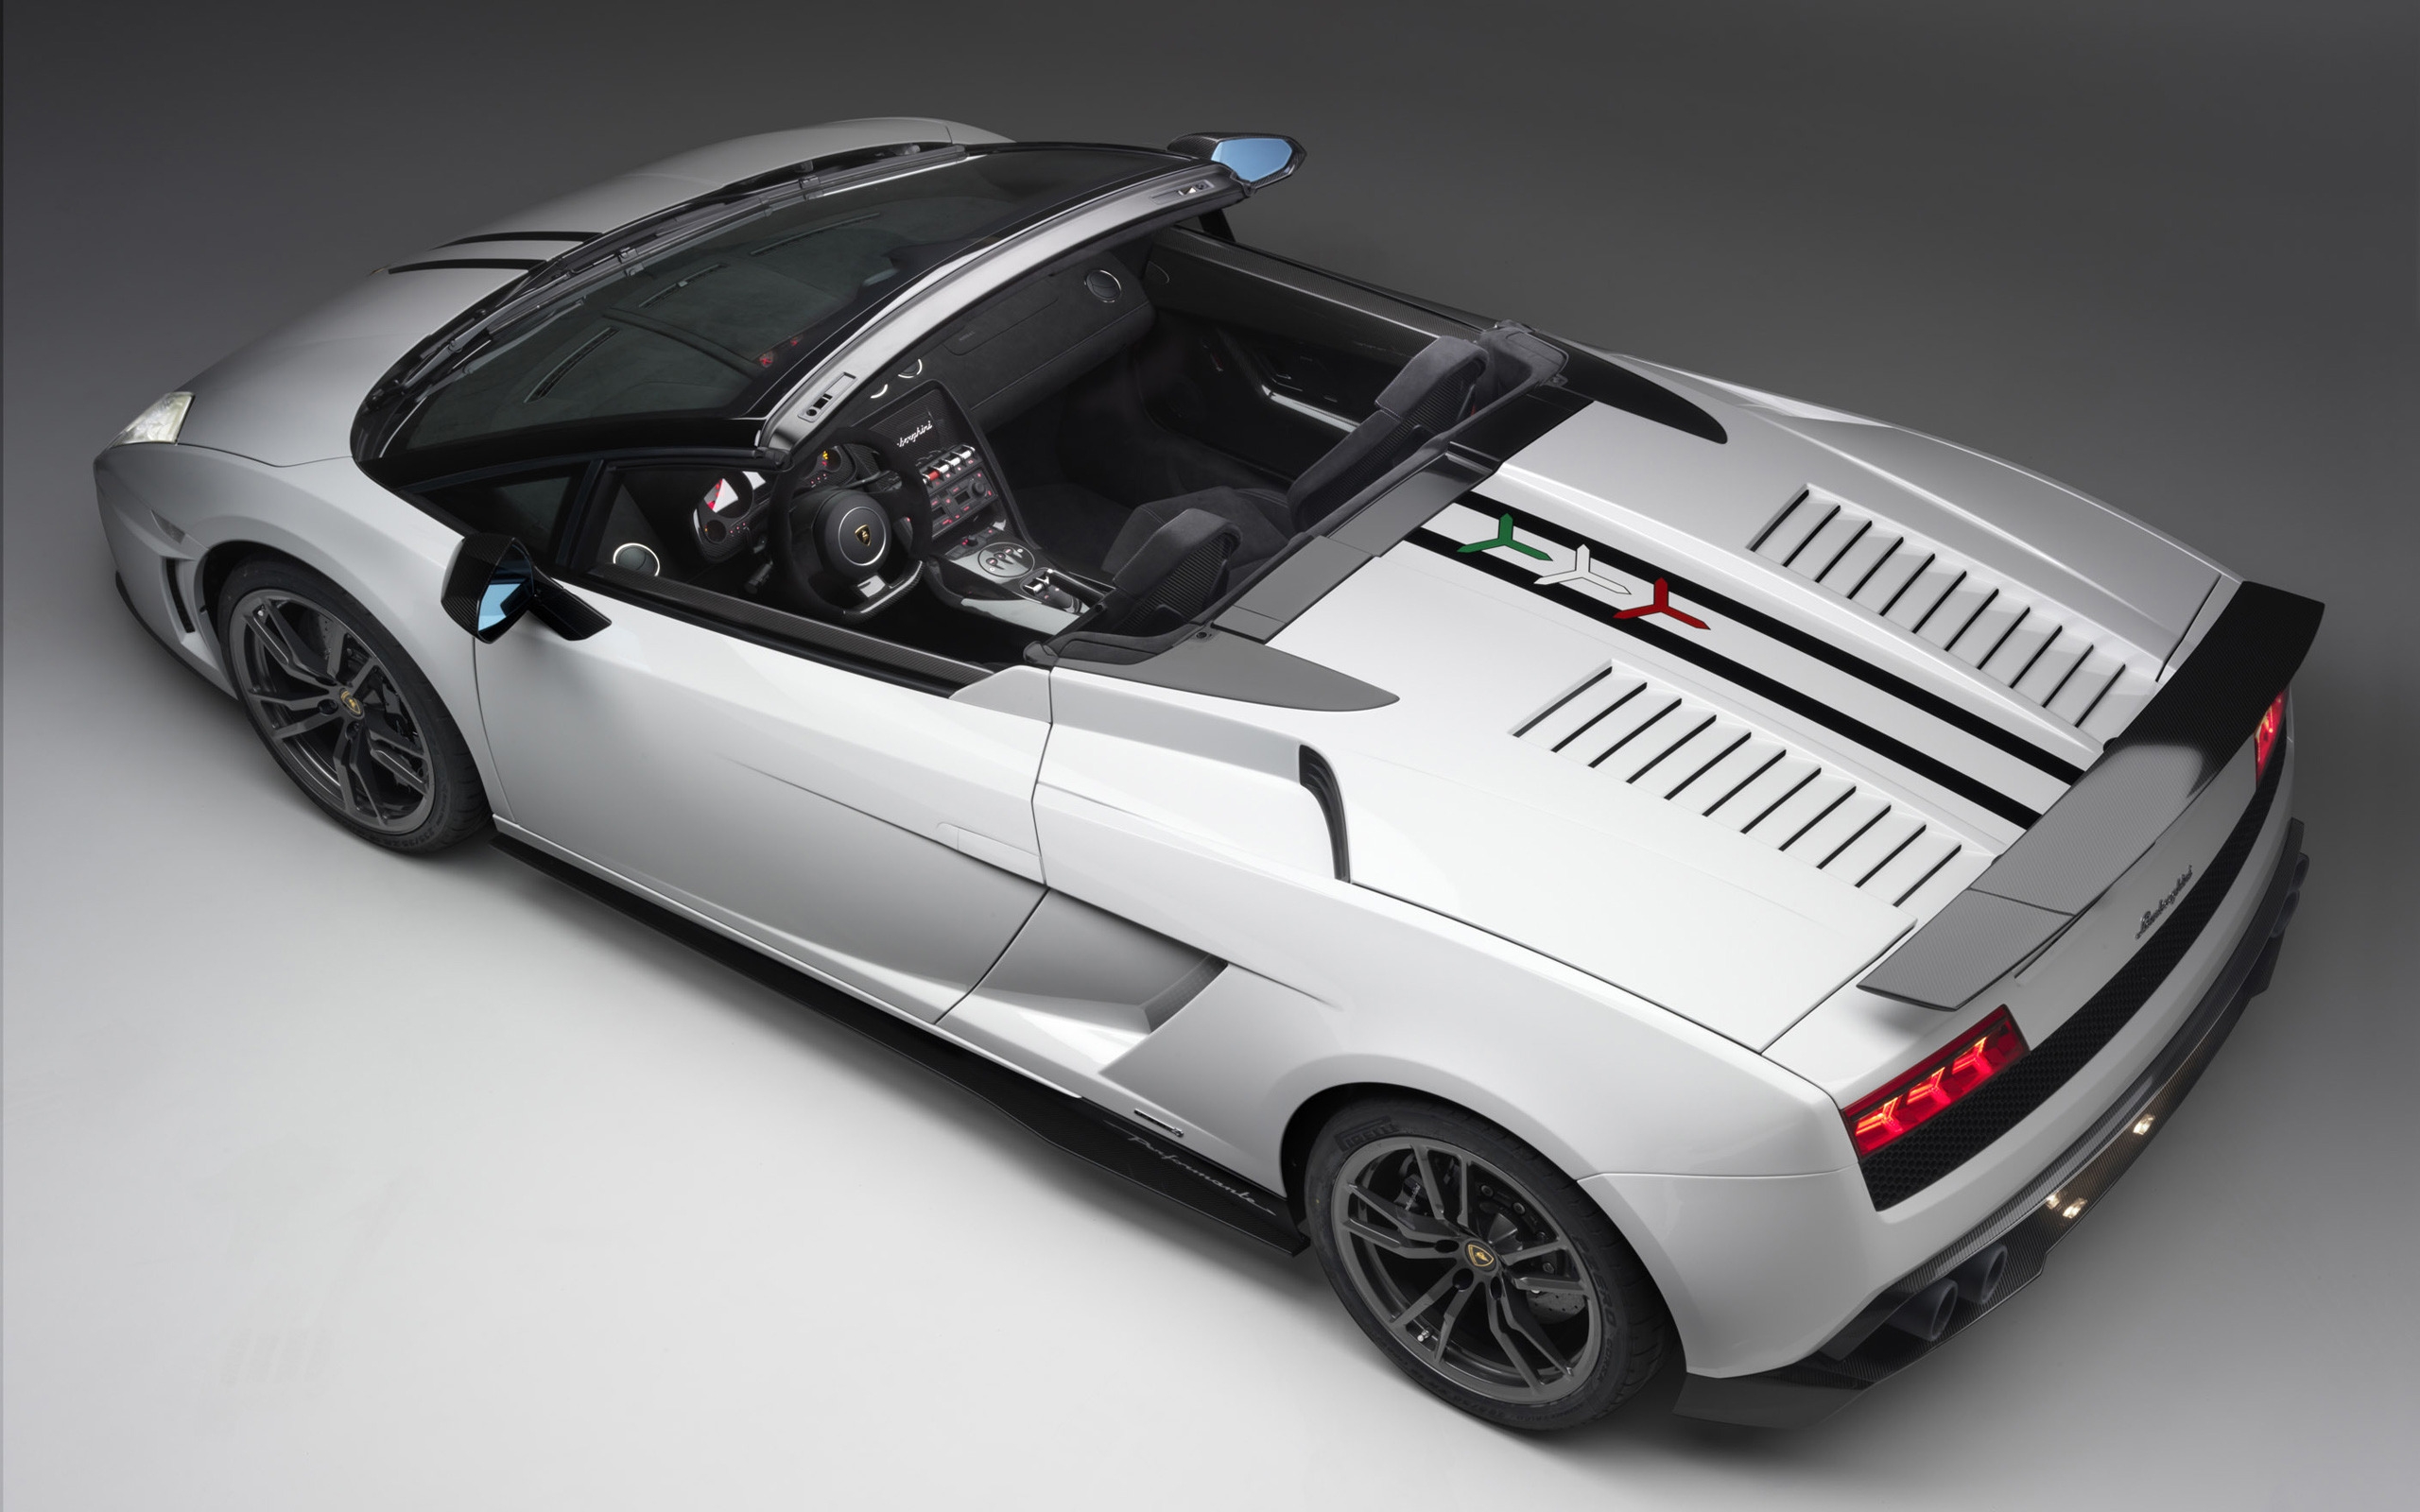 2011 Lamborghini Gallardo LP 570 4 Spyder for 2560 x 1600 widescreen resolution